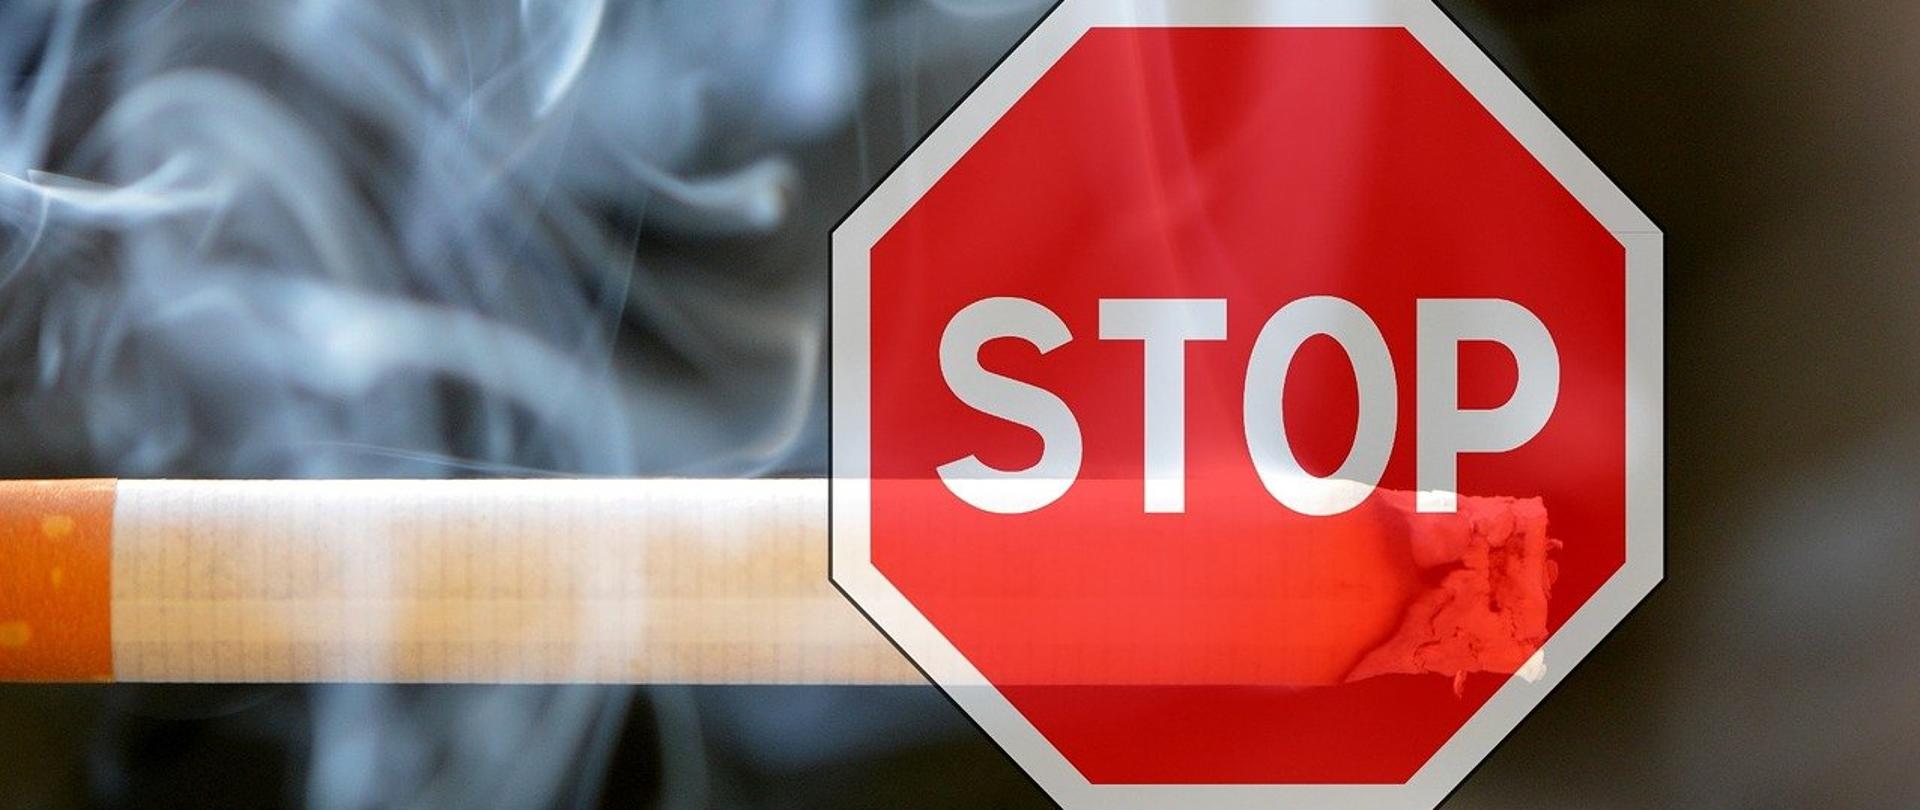 Palący się tradycyjny papieros, a na nim znak zakazu "Stop"